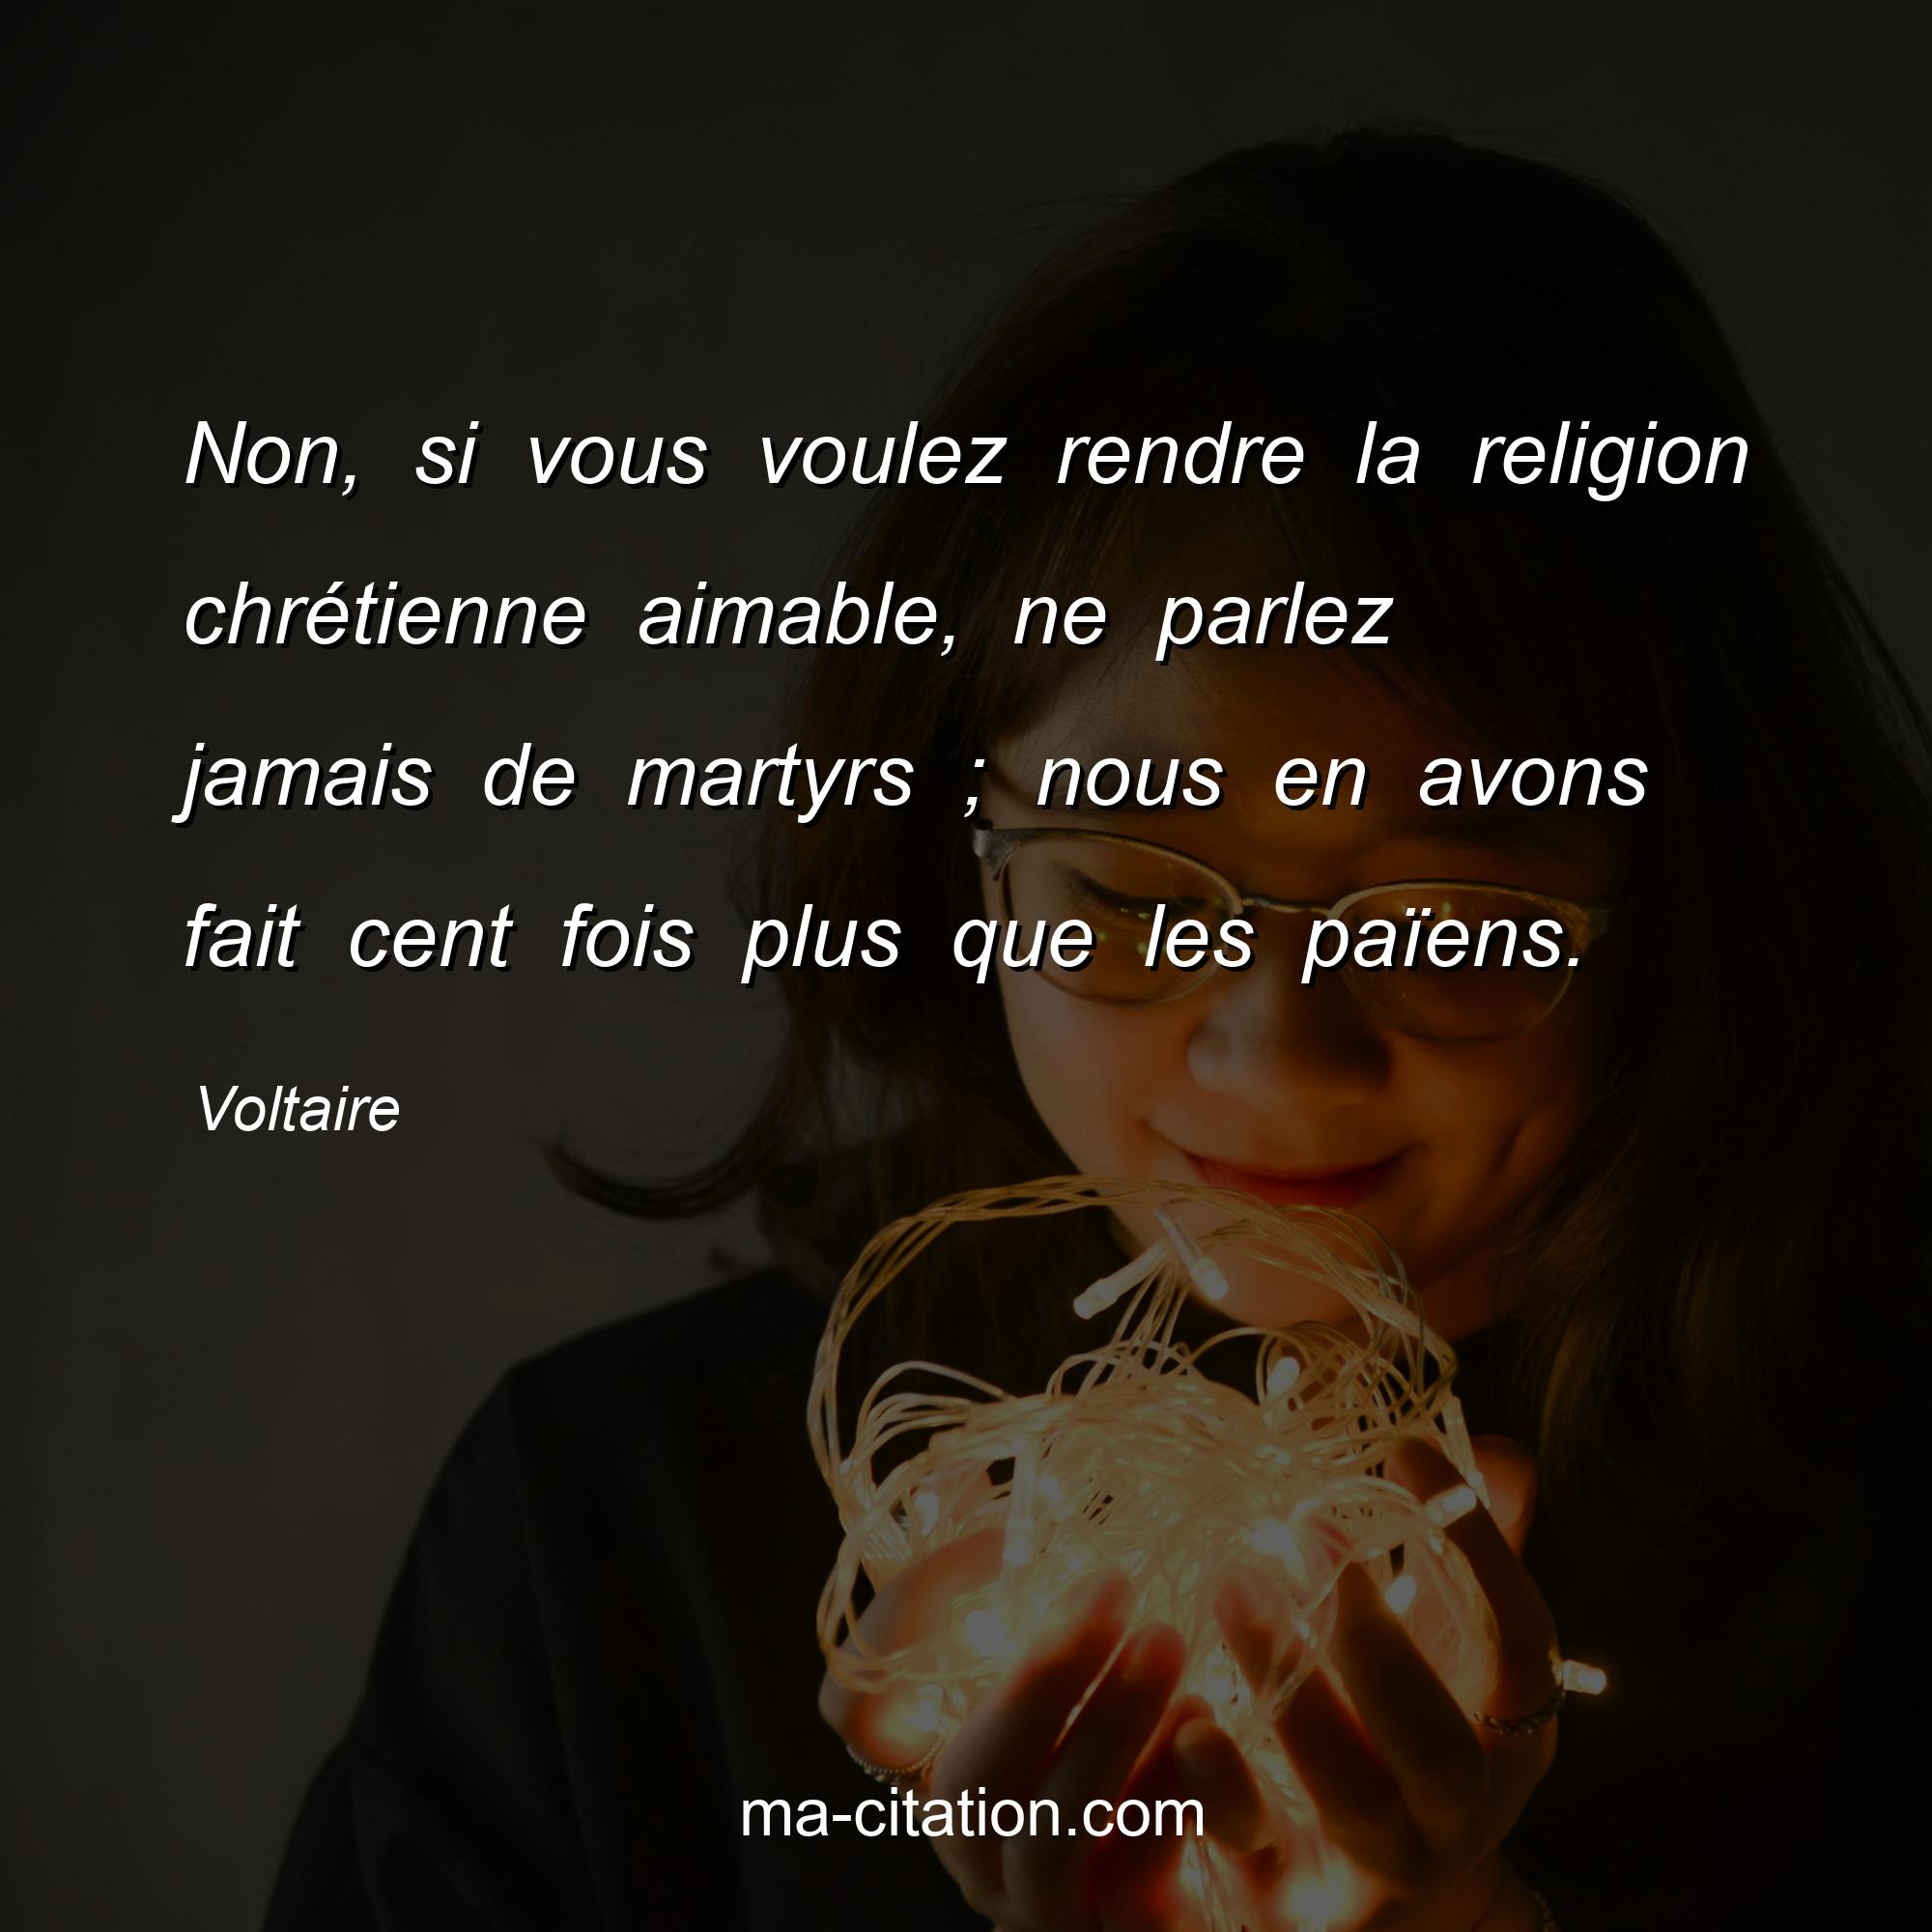 Voltaire : Non, si vous voulez rendre la religion chrétienne aimable, ne parlez jamais de martyrs ; nous en avons fait cent fois plus que les païens.